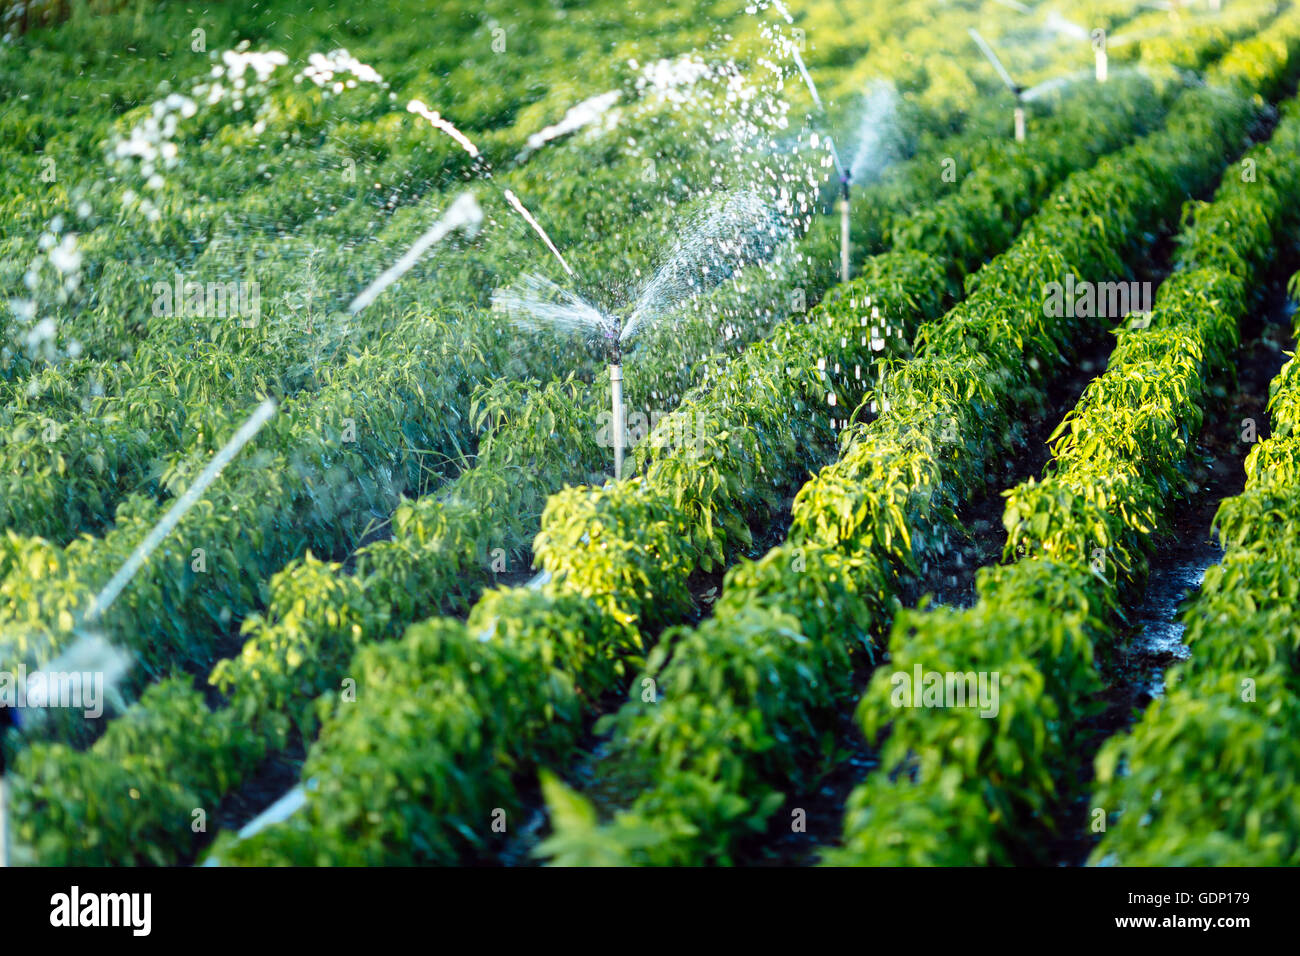 Impianto di irrigazione in funzione di irrigazione di piante agricole Foto Stock